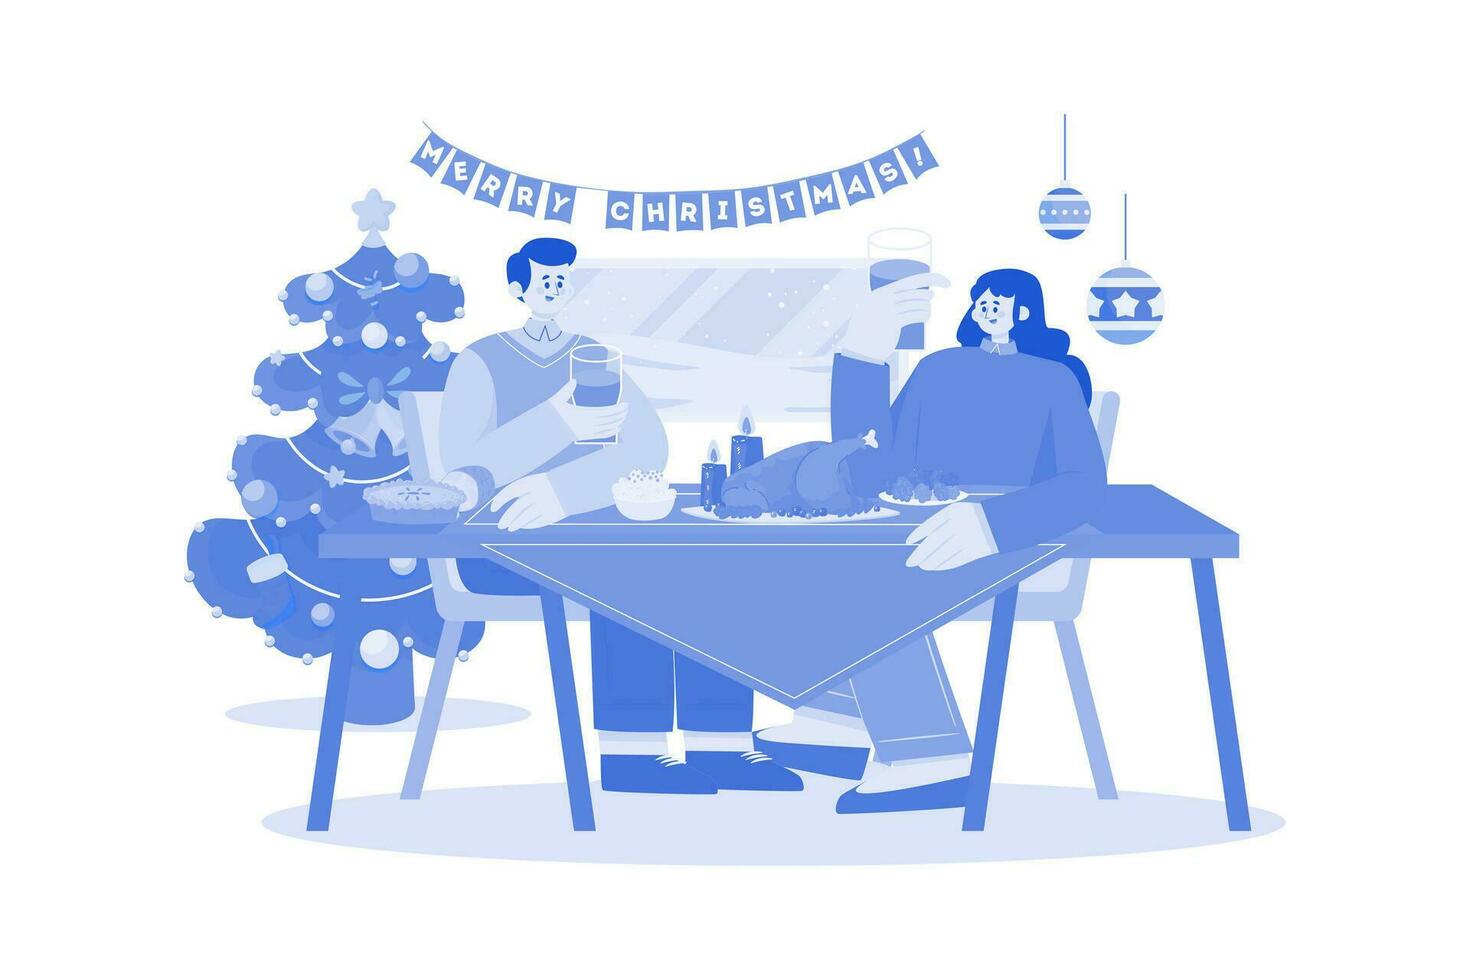 Kerst diner partij illustratie concept op witte achtergrond vector